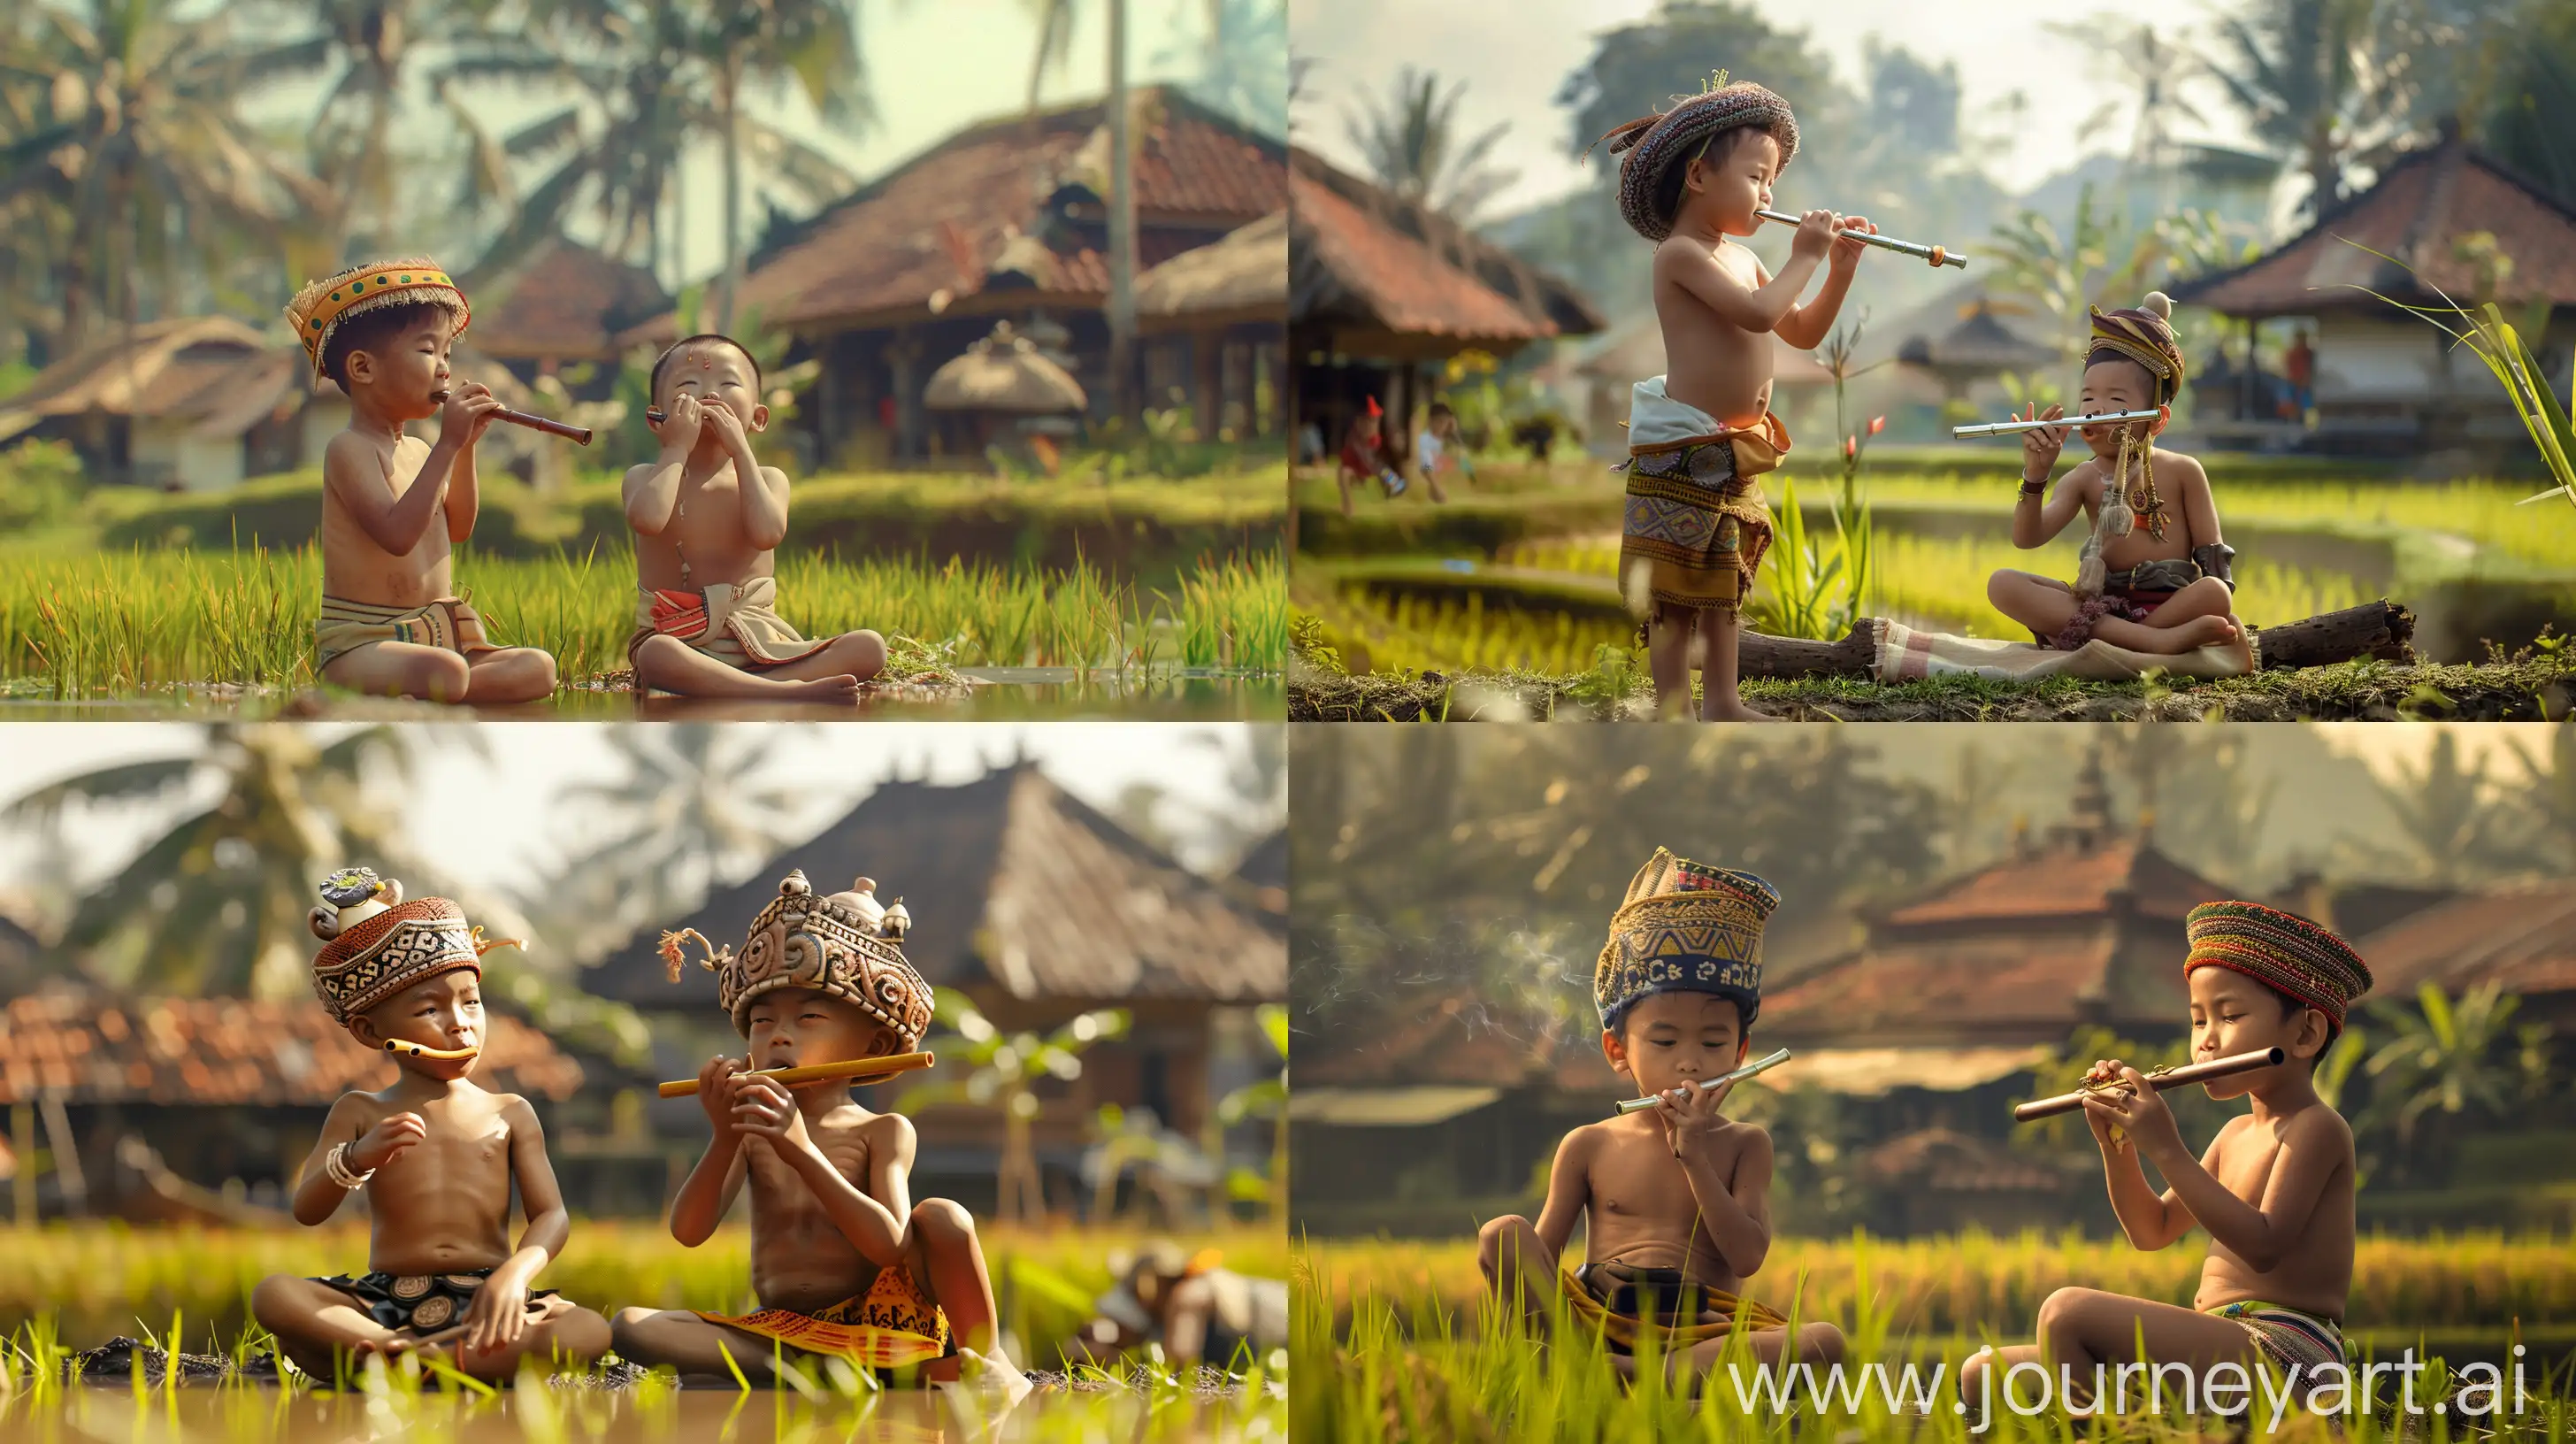 Kerajaan Sunda indonesia, ultra-realistic, di sebuah desa dan sawah ,seorang anak kecil tanpa kemeja dan memakai udeng khas bali di kepalanya, sedang meniup seruling di sebelah nya temannya duduk,, --v 6 --ar 16:9